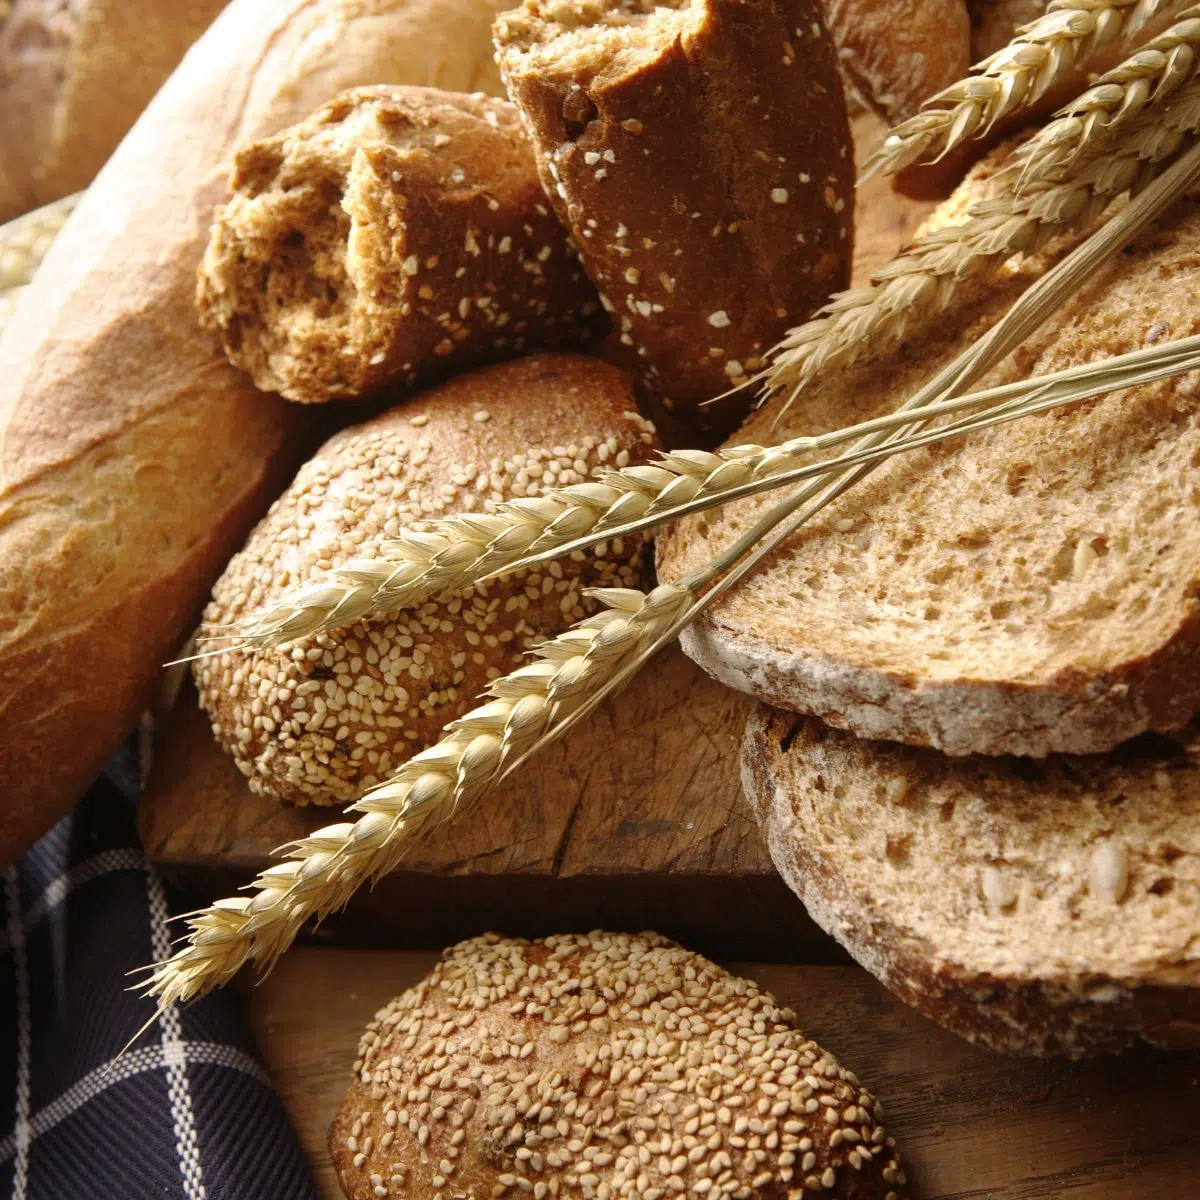 Квадратное изображение, показывающее разные виды хлеба.